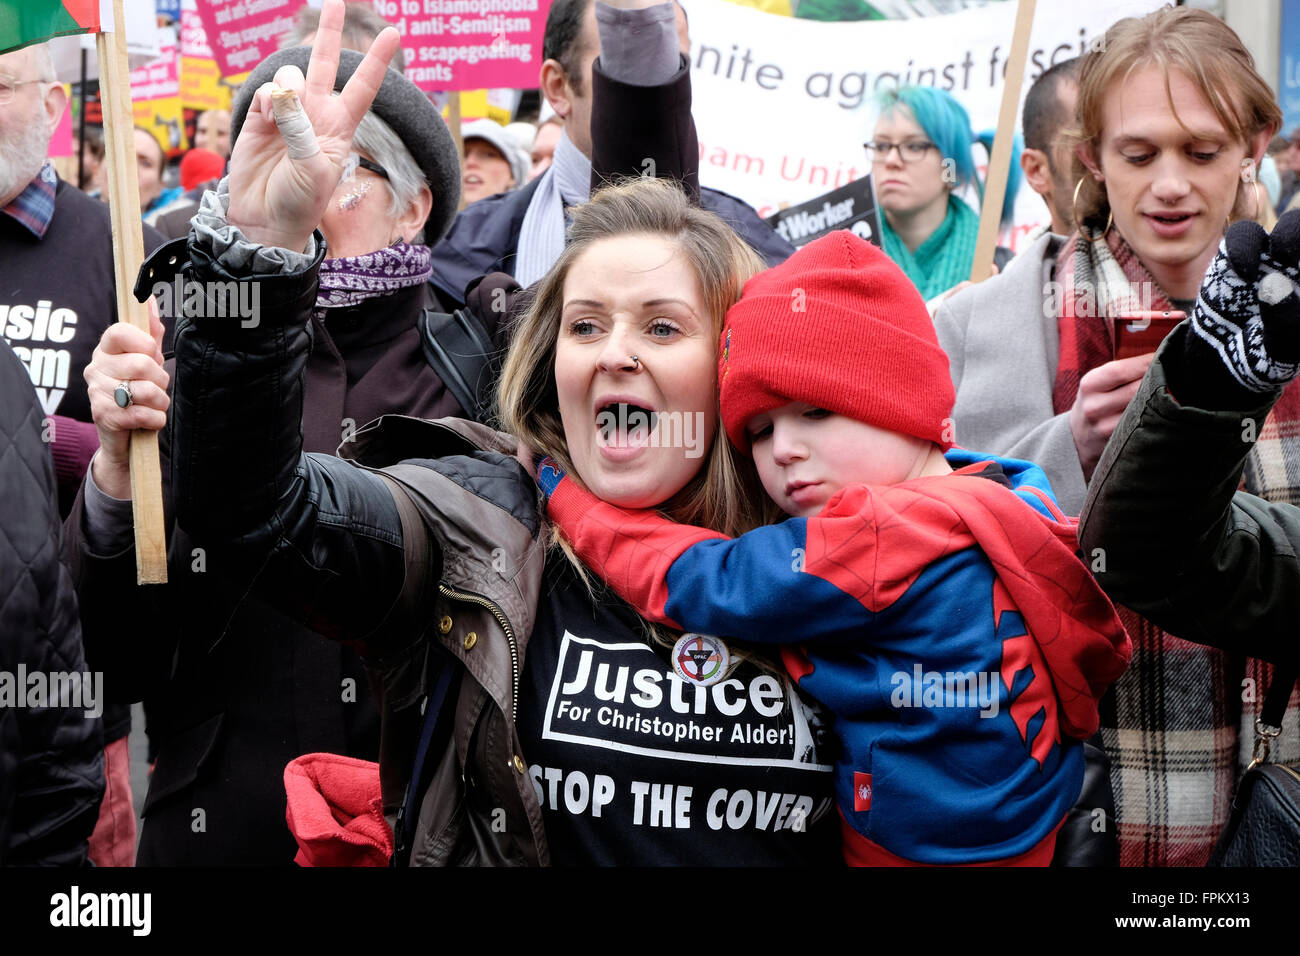 Eine Frau mit einem Kind schreit Parolen während einer Demonstration gegen Rassismus Stockfoto